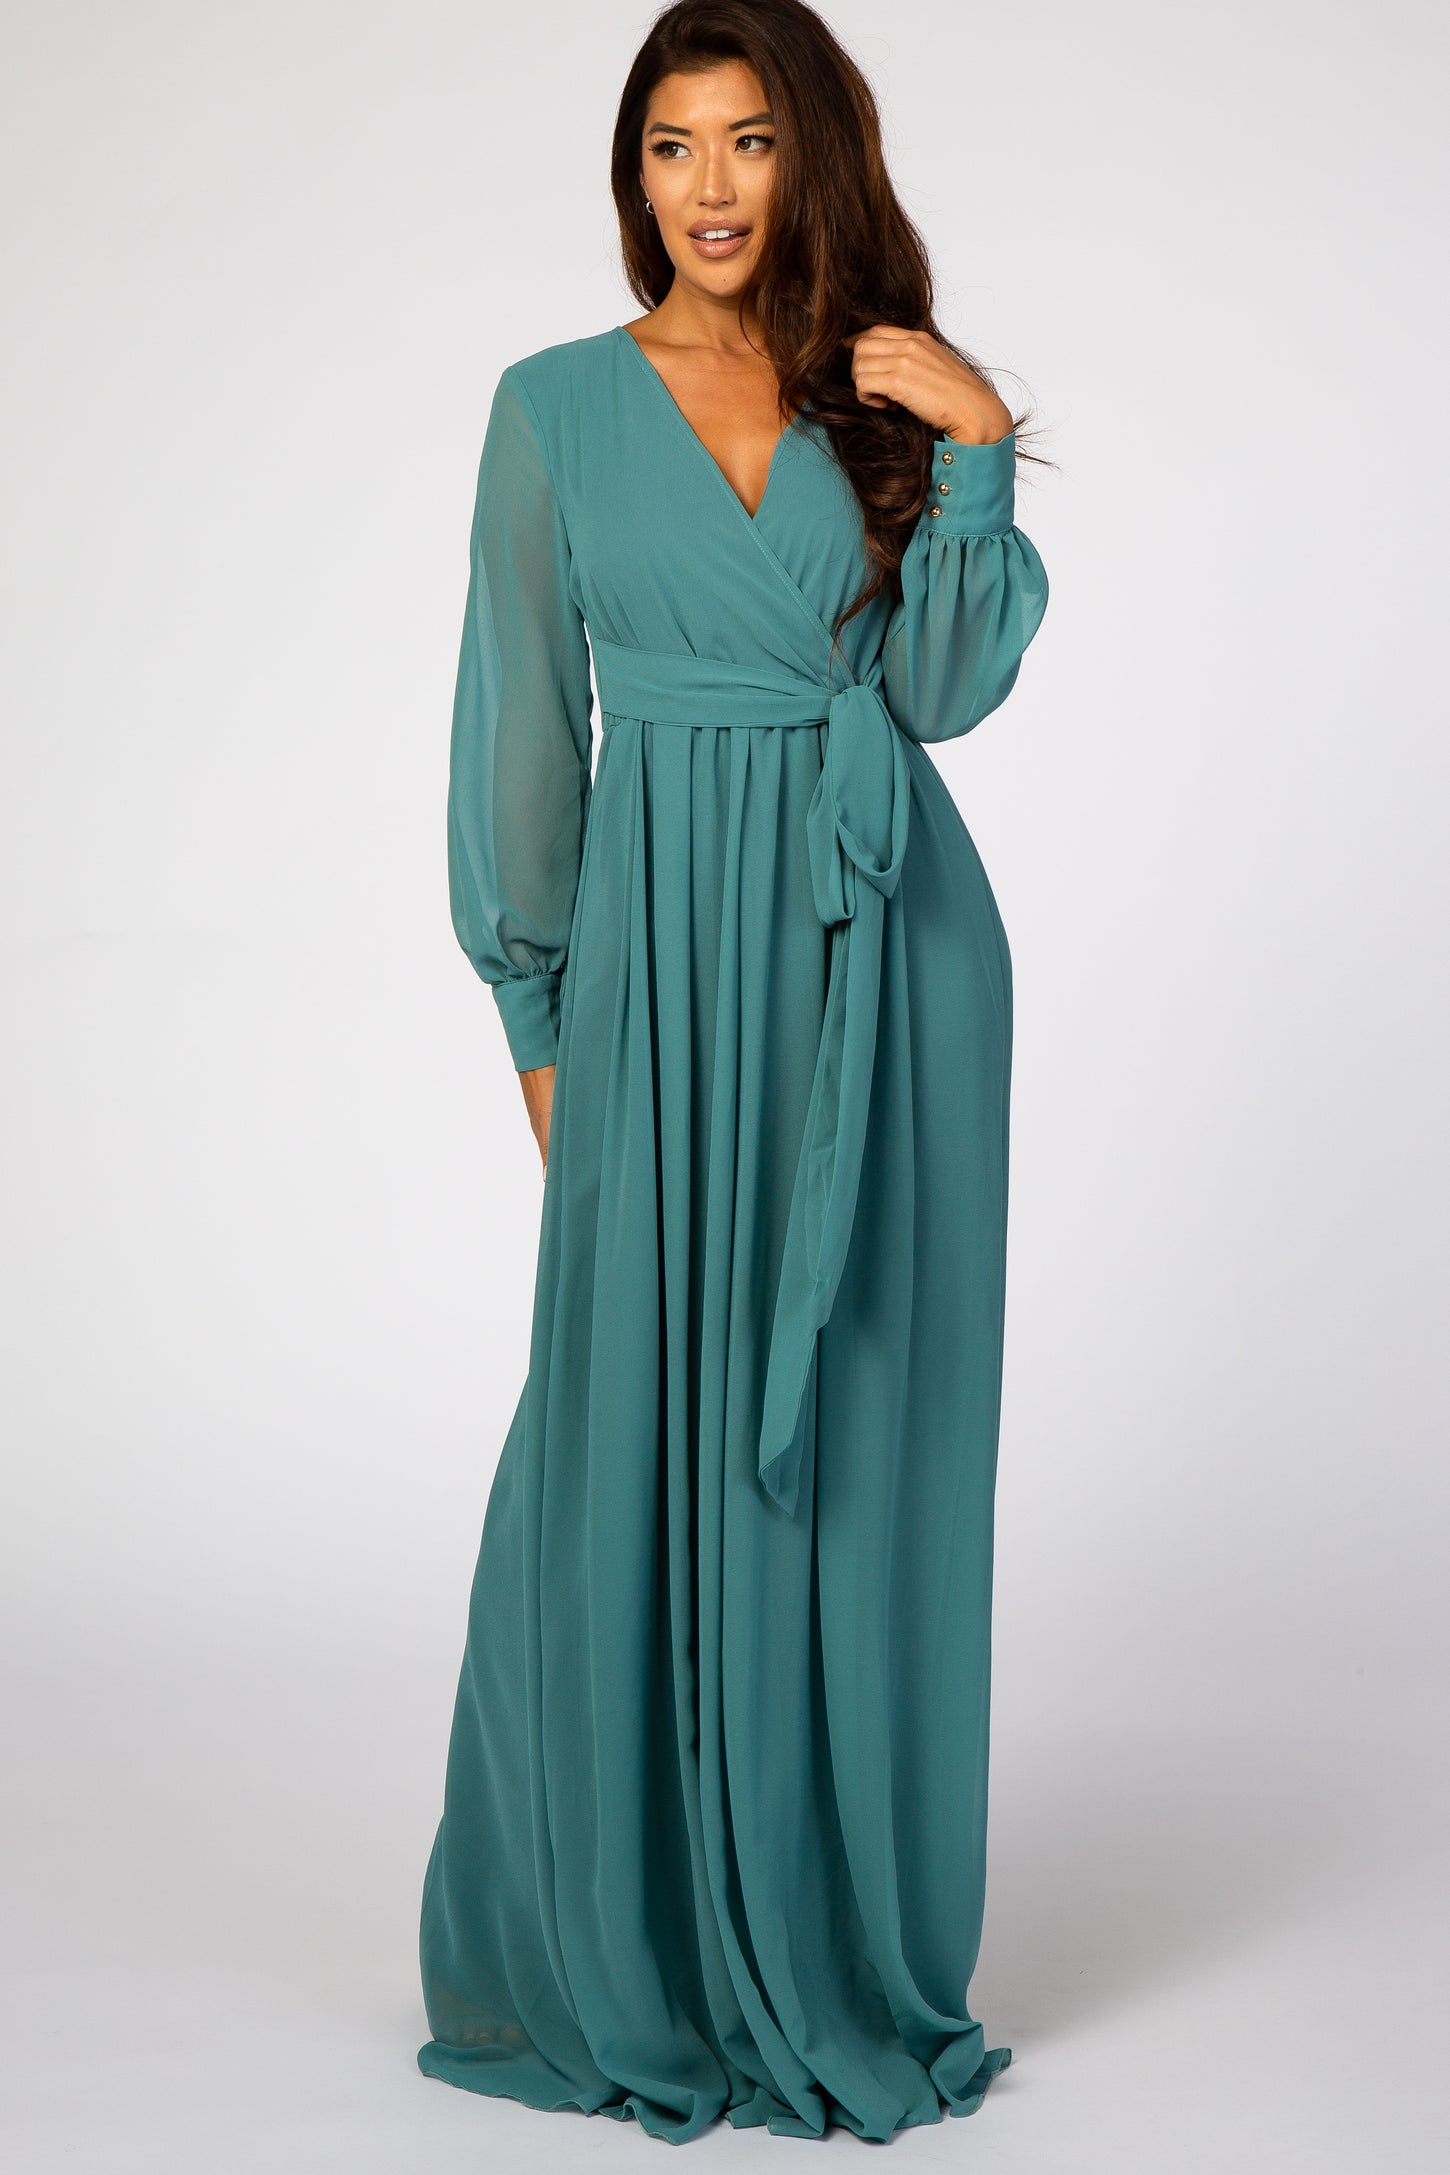 Jade Chiffon Long Sleeve Maternity Maxi Dress– PinkBlush